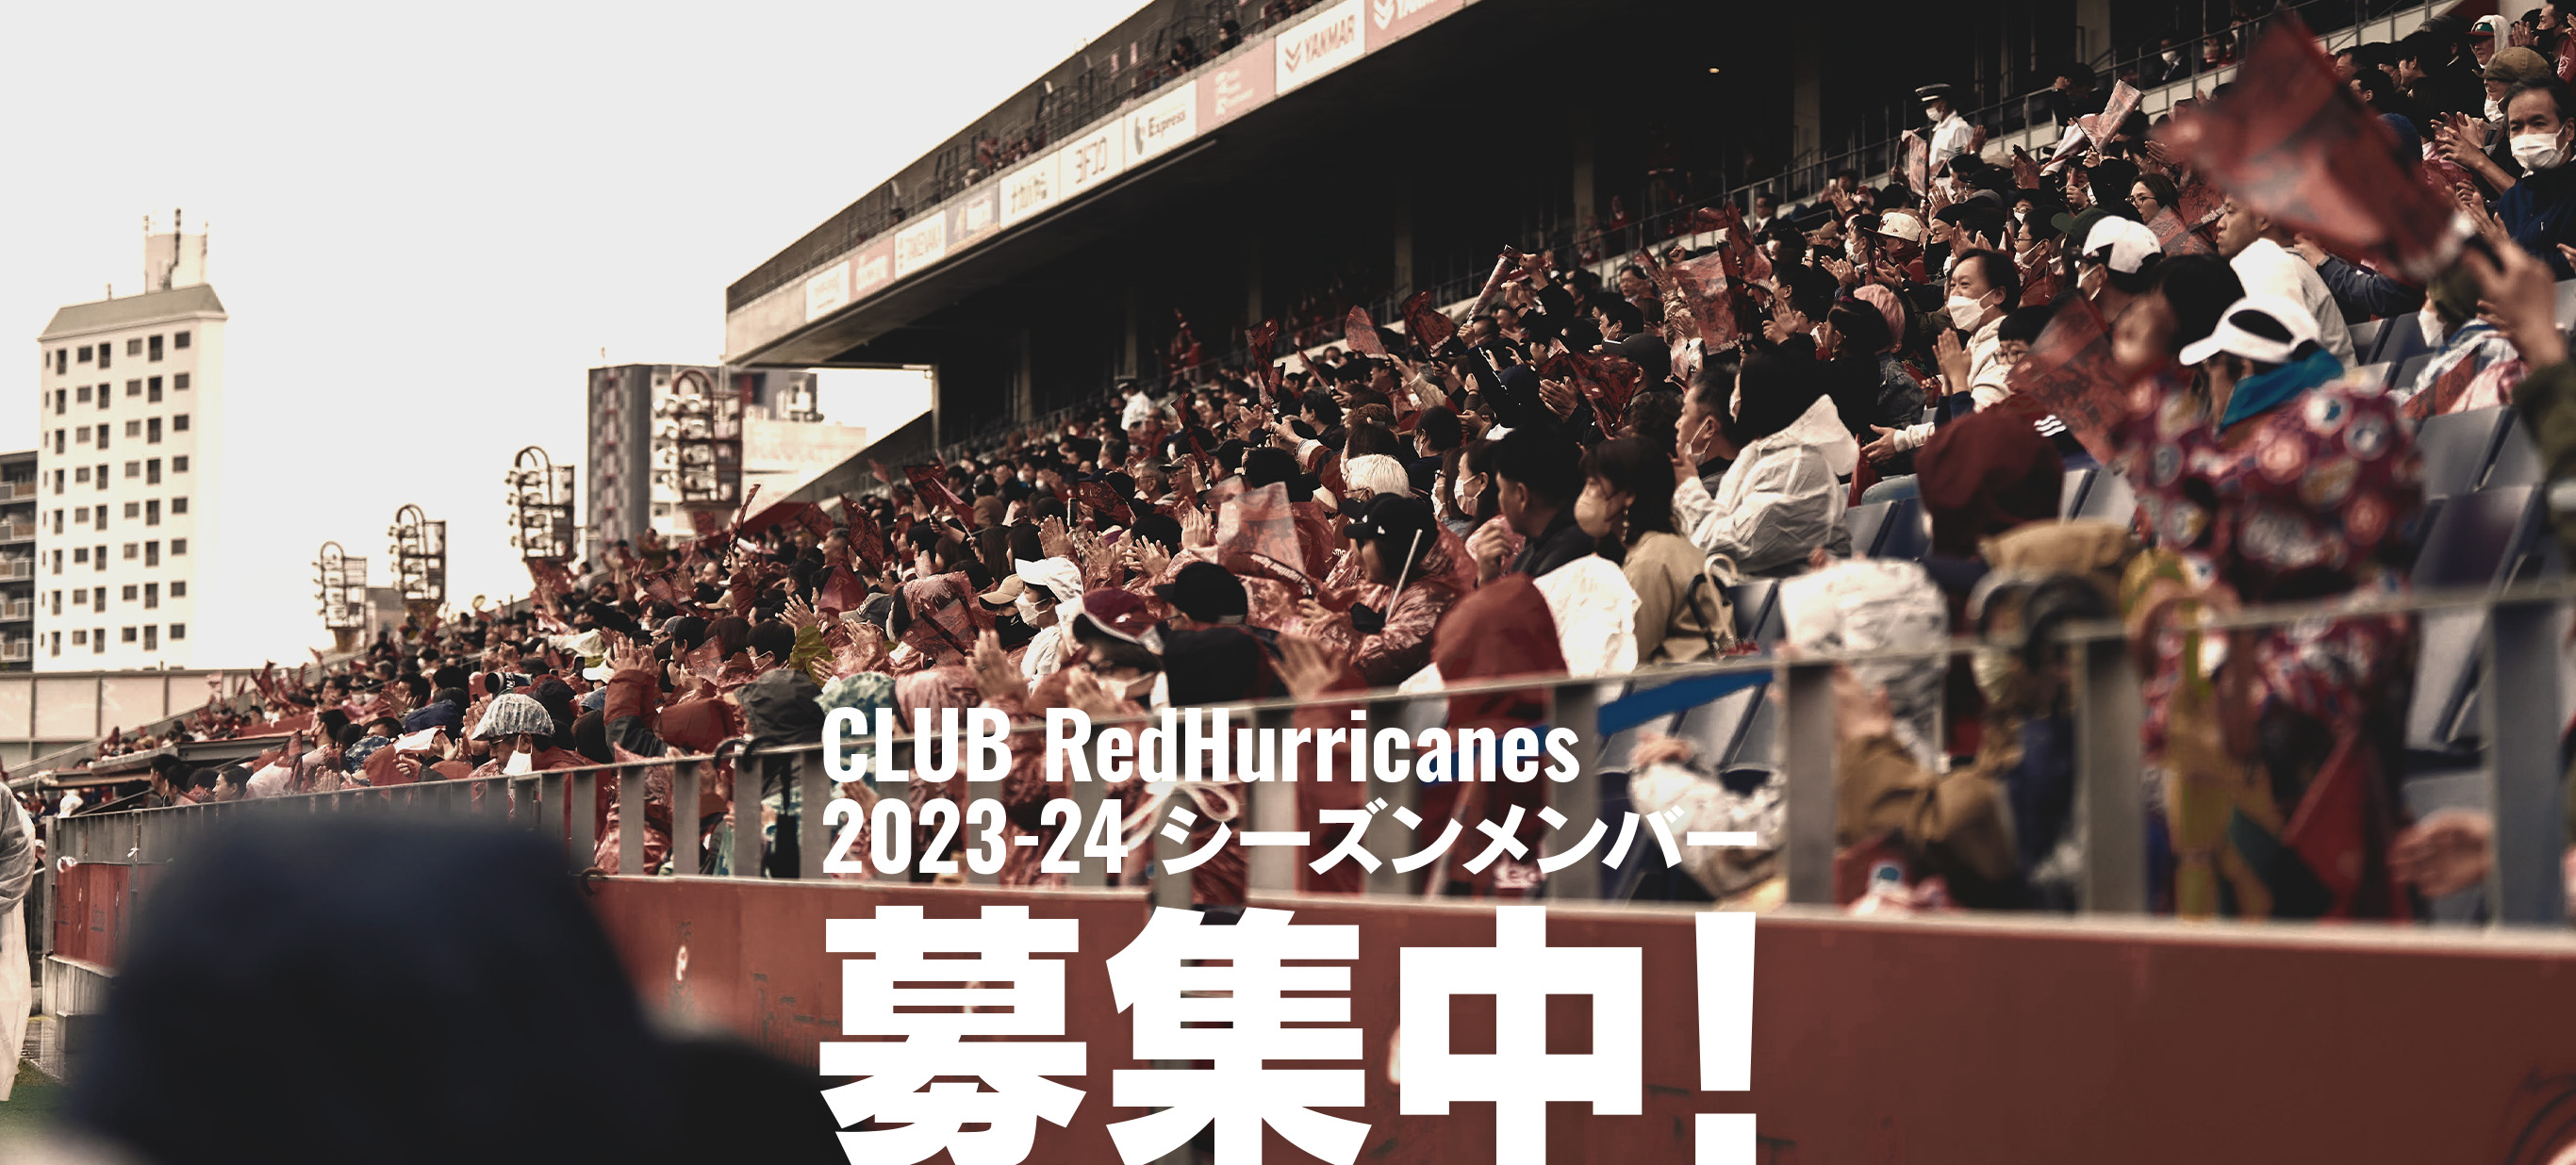 CLUB redhurricanes 2023-24 シーズンメンバー 募集中